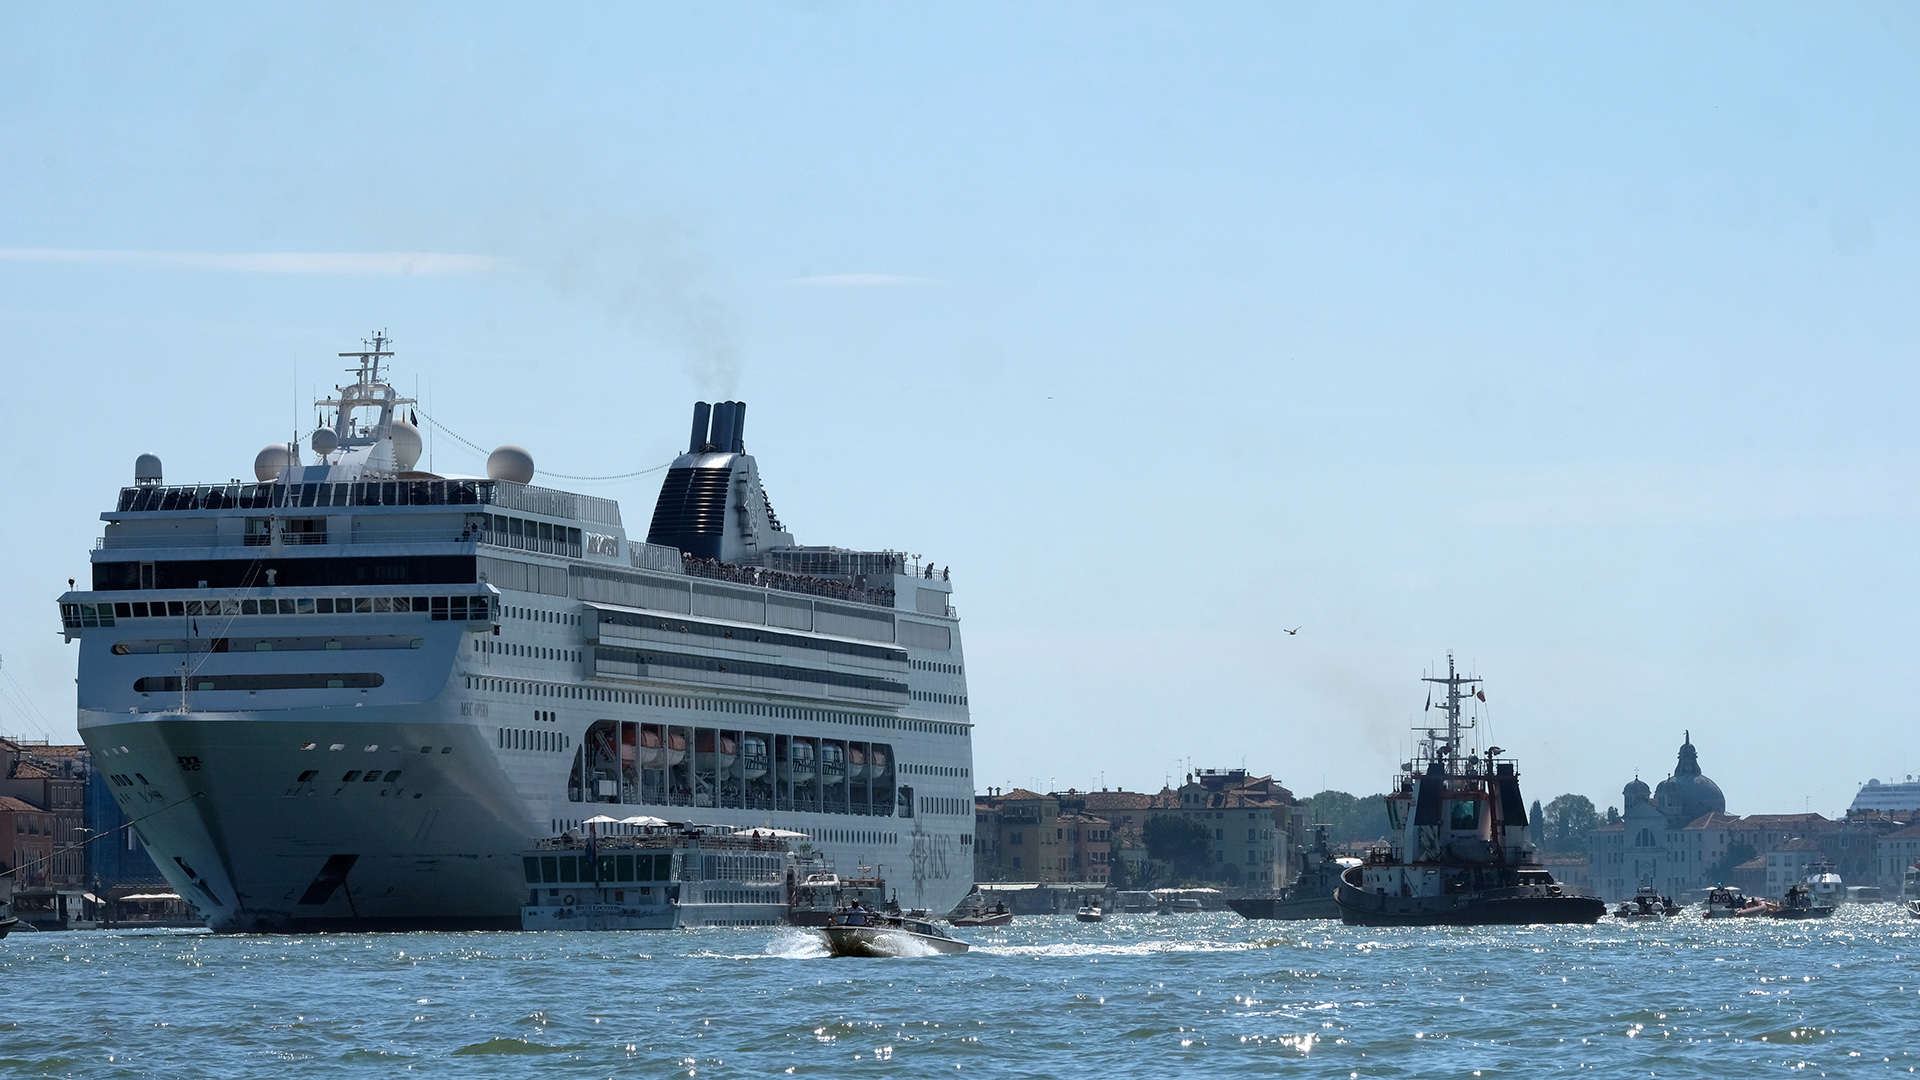 Das Kreuzfahrtschiff  "Msc Opera" ist an der Anlegestelle "San Basilio" im Kanal von Giudecca mit einem Touristenboot zusammengestoßen. | REUTERS